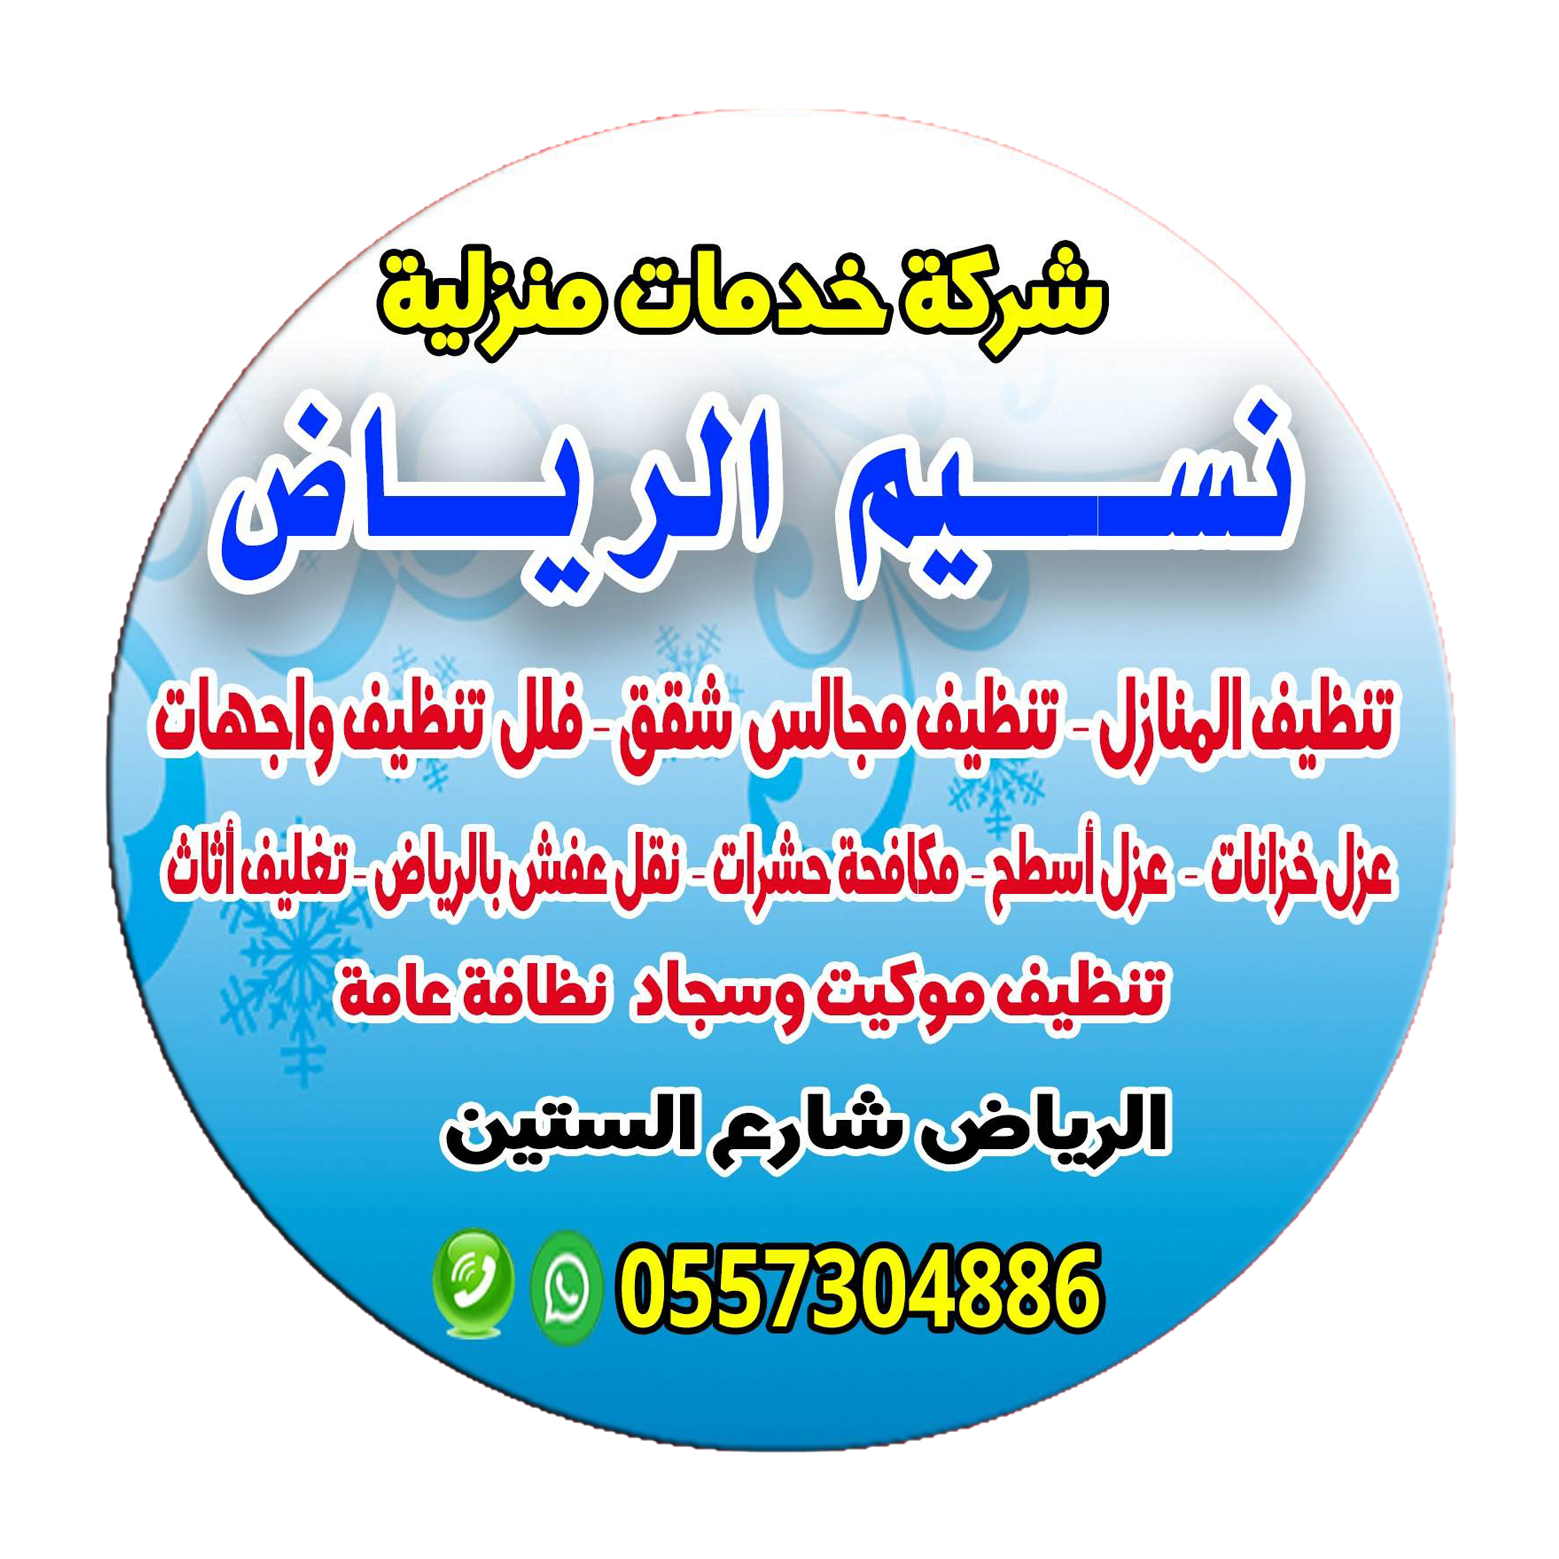 شركة تنظيف المنازل في الرياض – الفلل والقصور والمجالس – خدمة سريعة